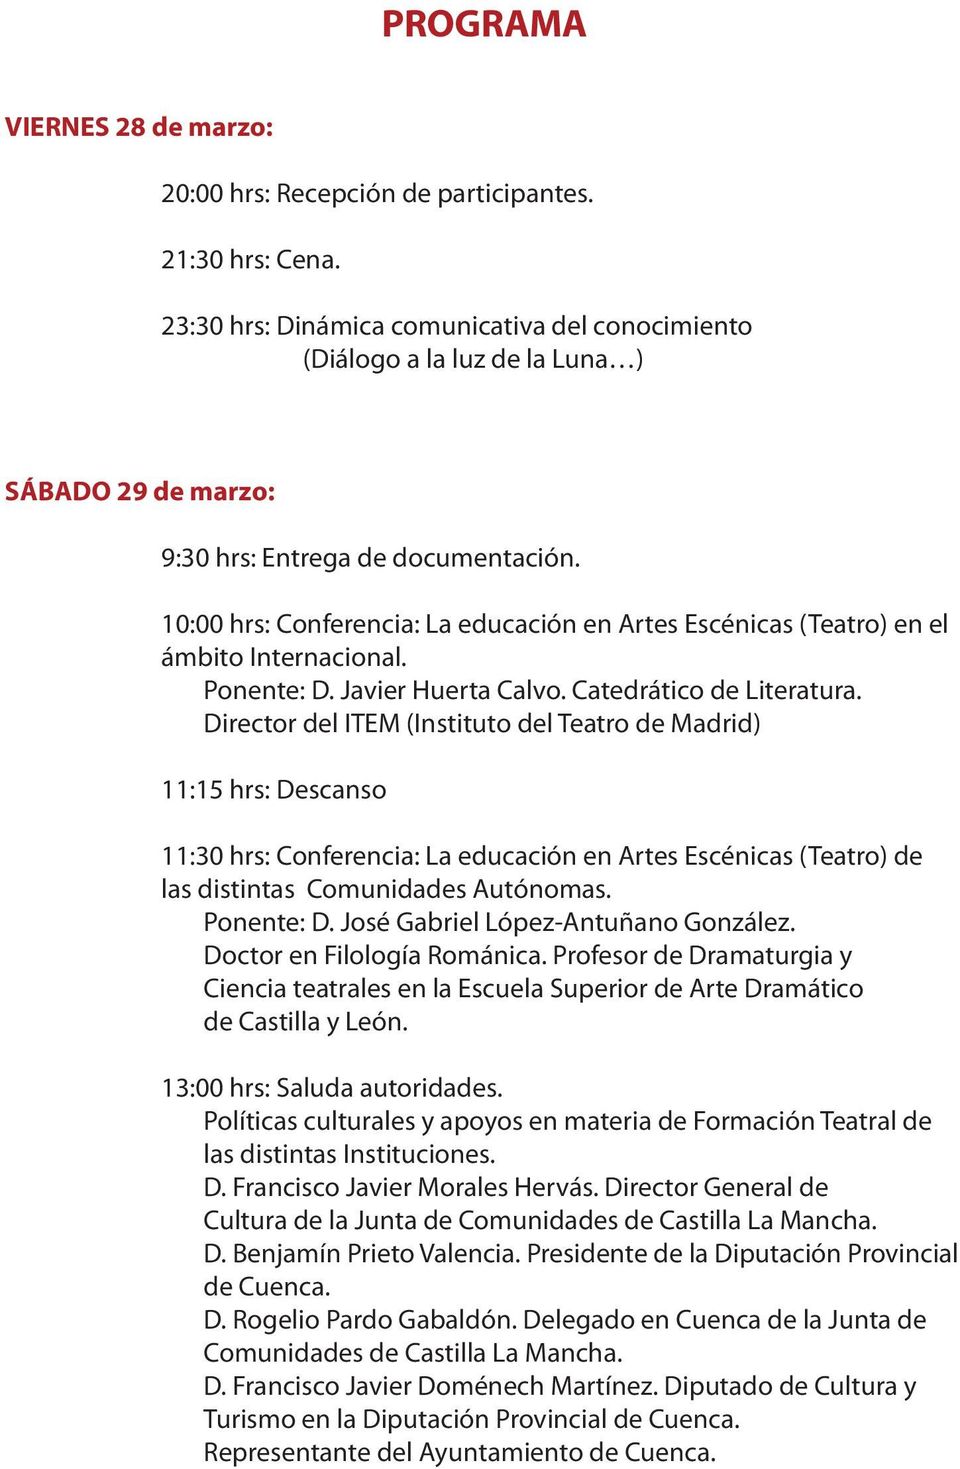 10:00 hrs: Conferencia: La educación en Artes Escénicas (Teatro) en el ámbito Internacional. Ponente: D. Javier Huerta Calvo. Catedrático de Literatura.